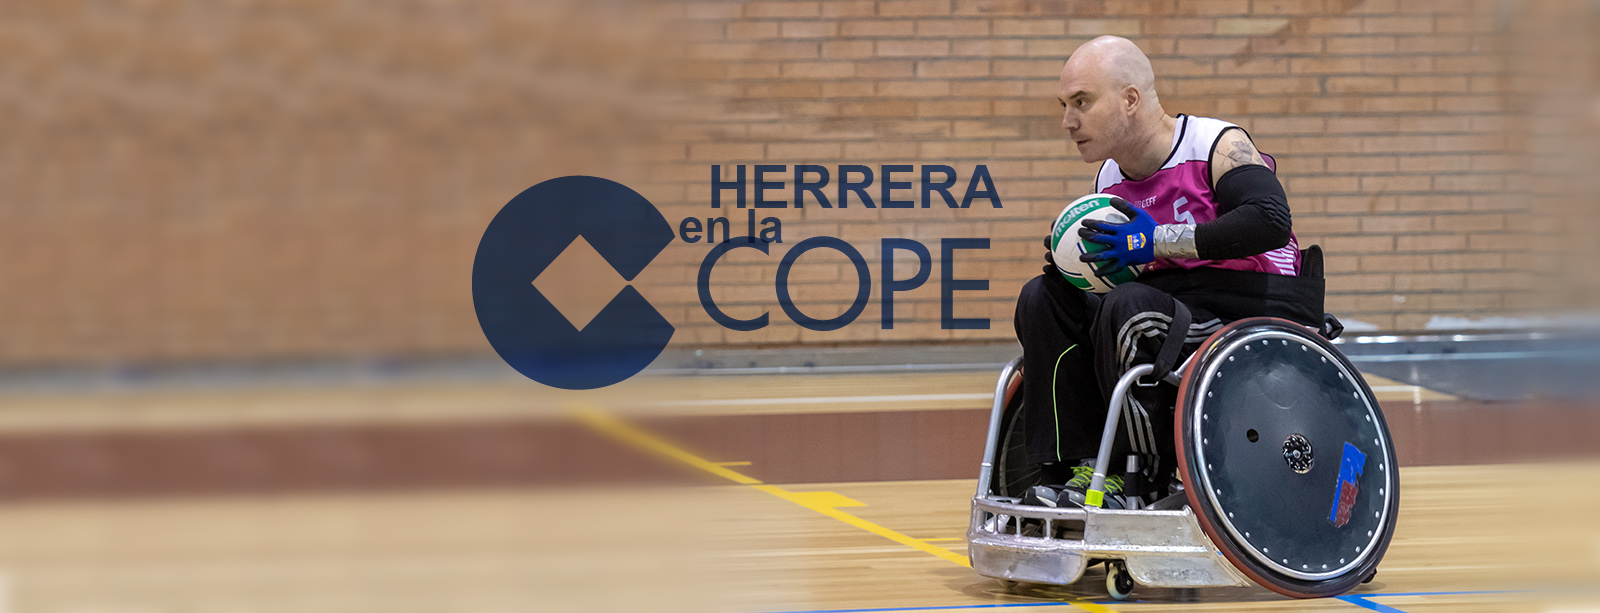 Un Quijote en Herrera en la Cope: entrevista a Román David de nuestro equipo quad